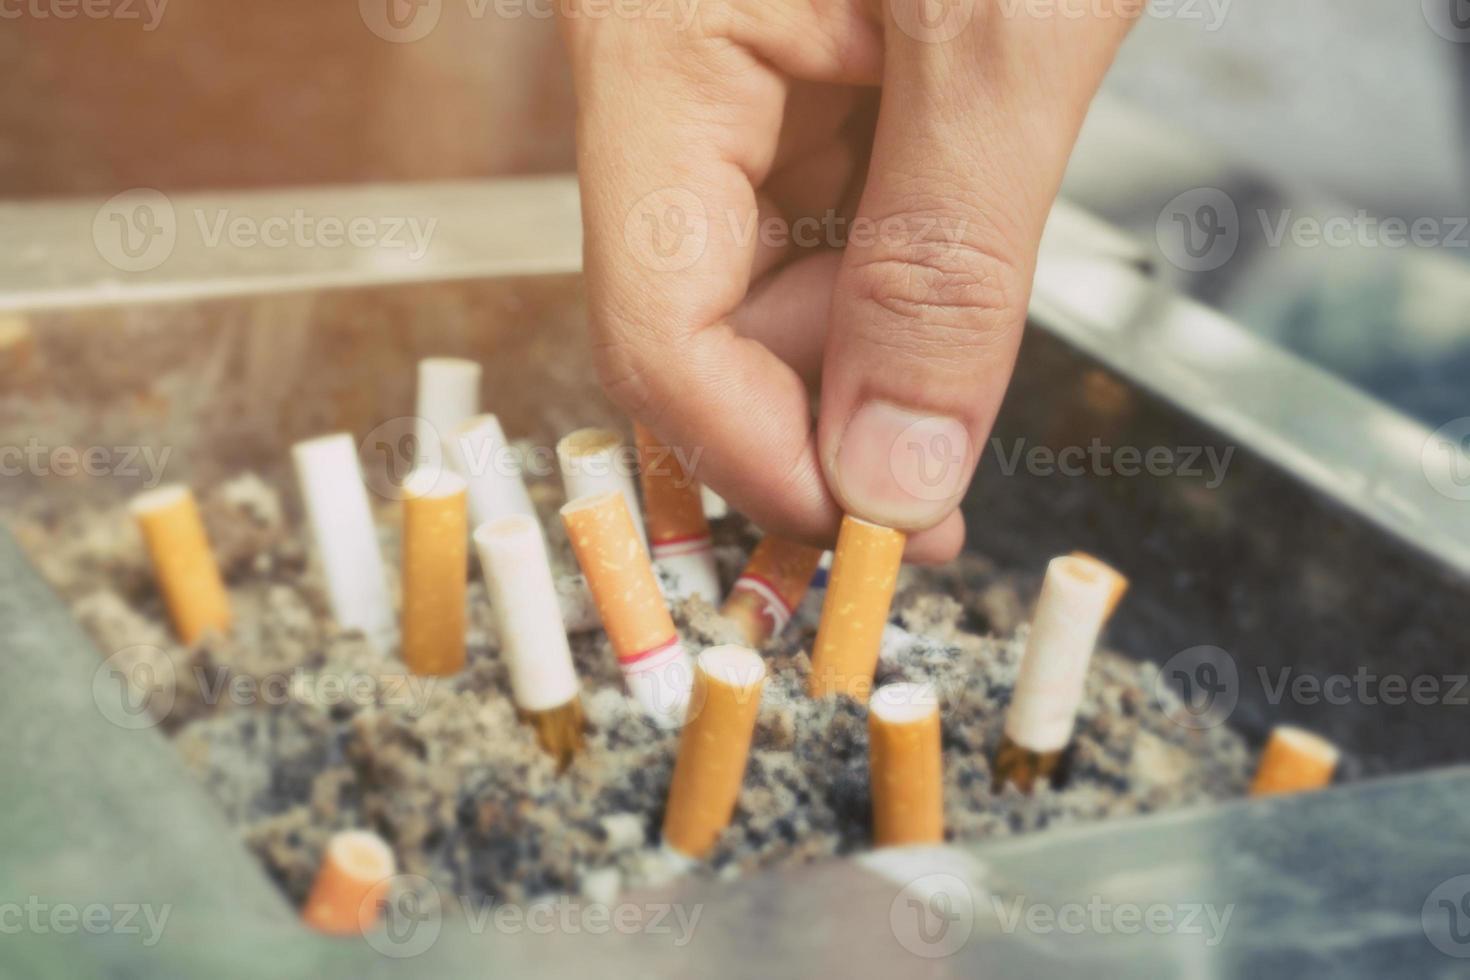 kont Aan sigaretten in de asbakje. Daar zijn veel types van sigaret stomp Aan de zand in de asbakje. een sigaret is niet mooi zo voor Gezondheid. foto